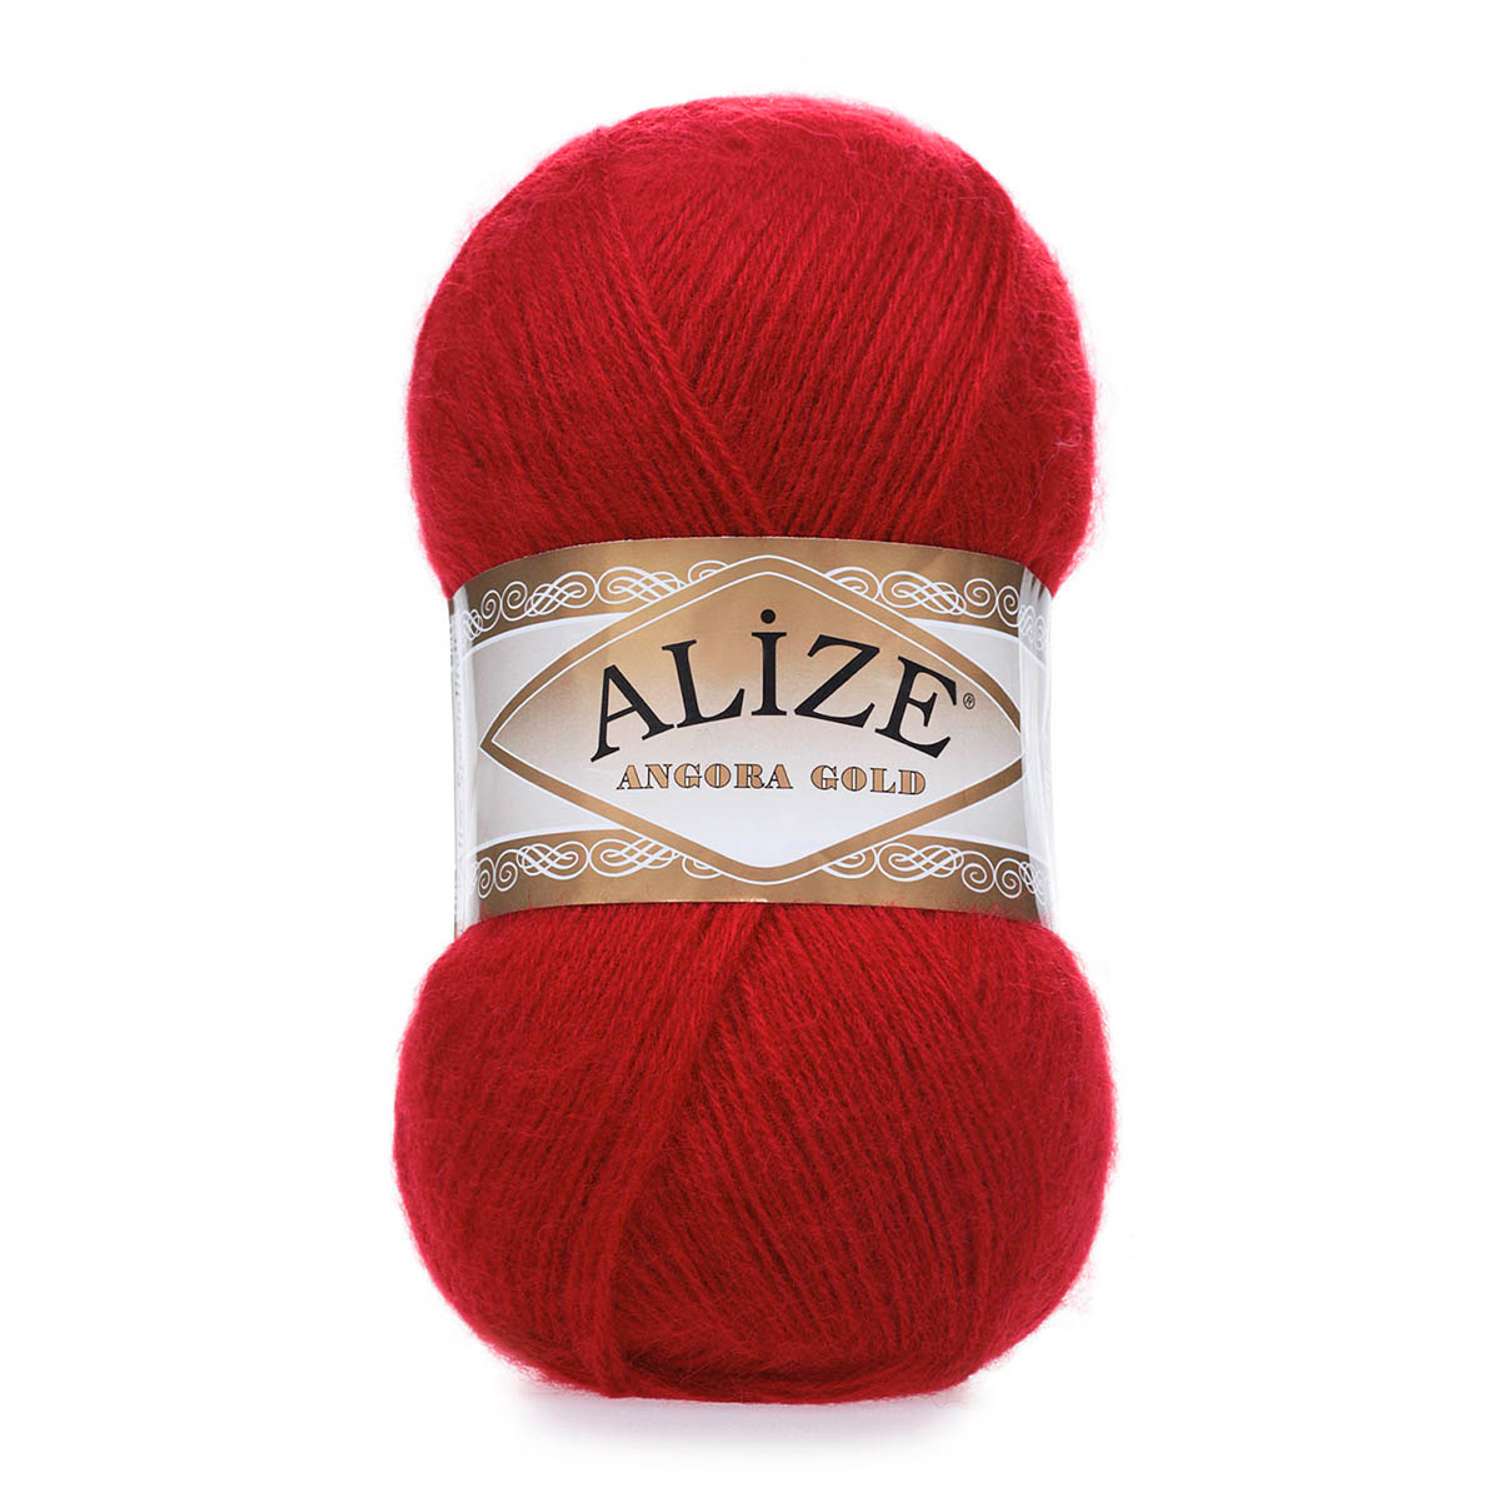 Пряжа Alize мягкая теплая для шарфов кардиганов Angora Gold 100 гр 550 м 5 мотков 106 красный - фото 6